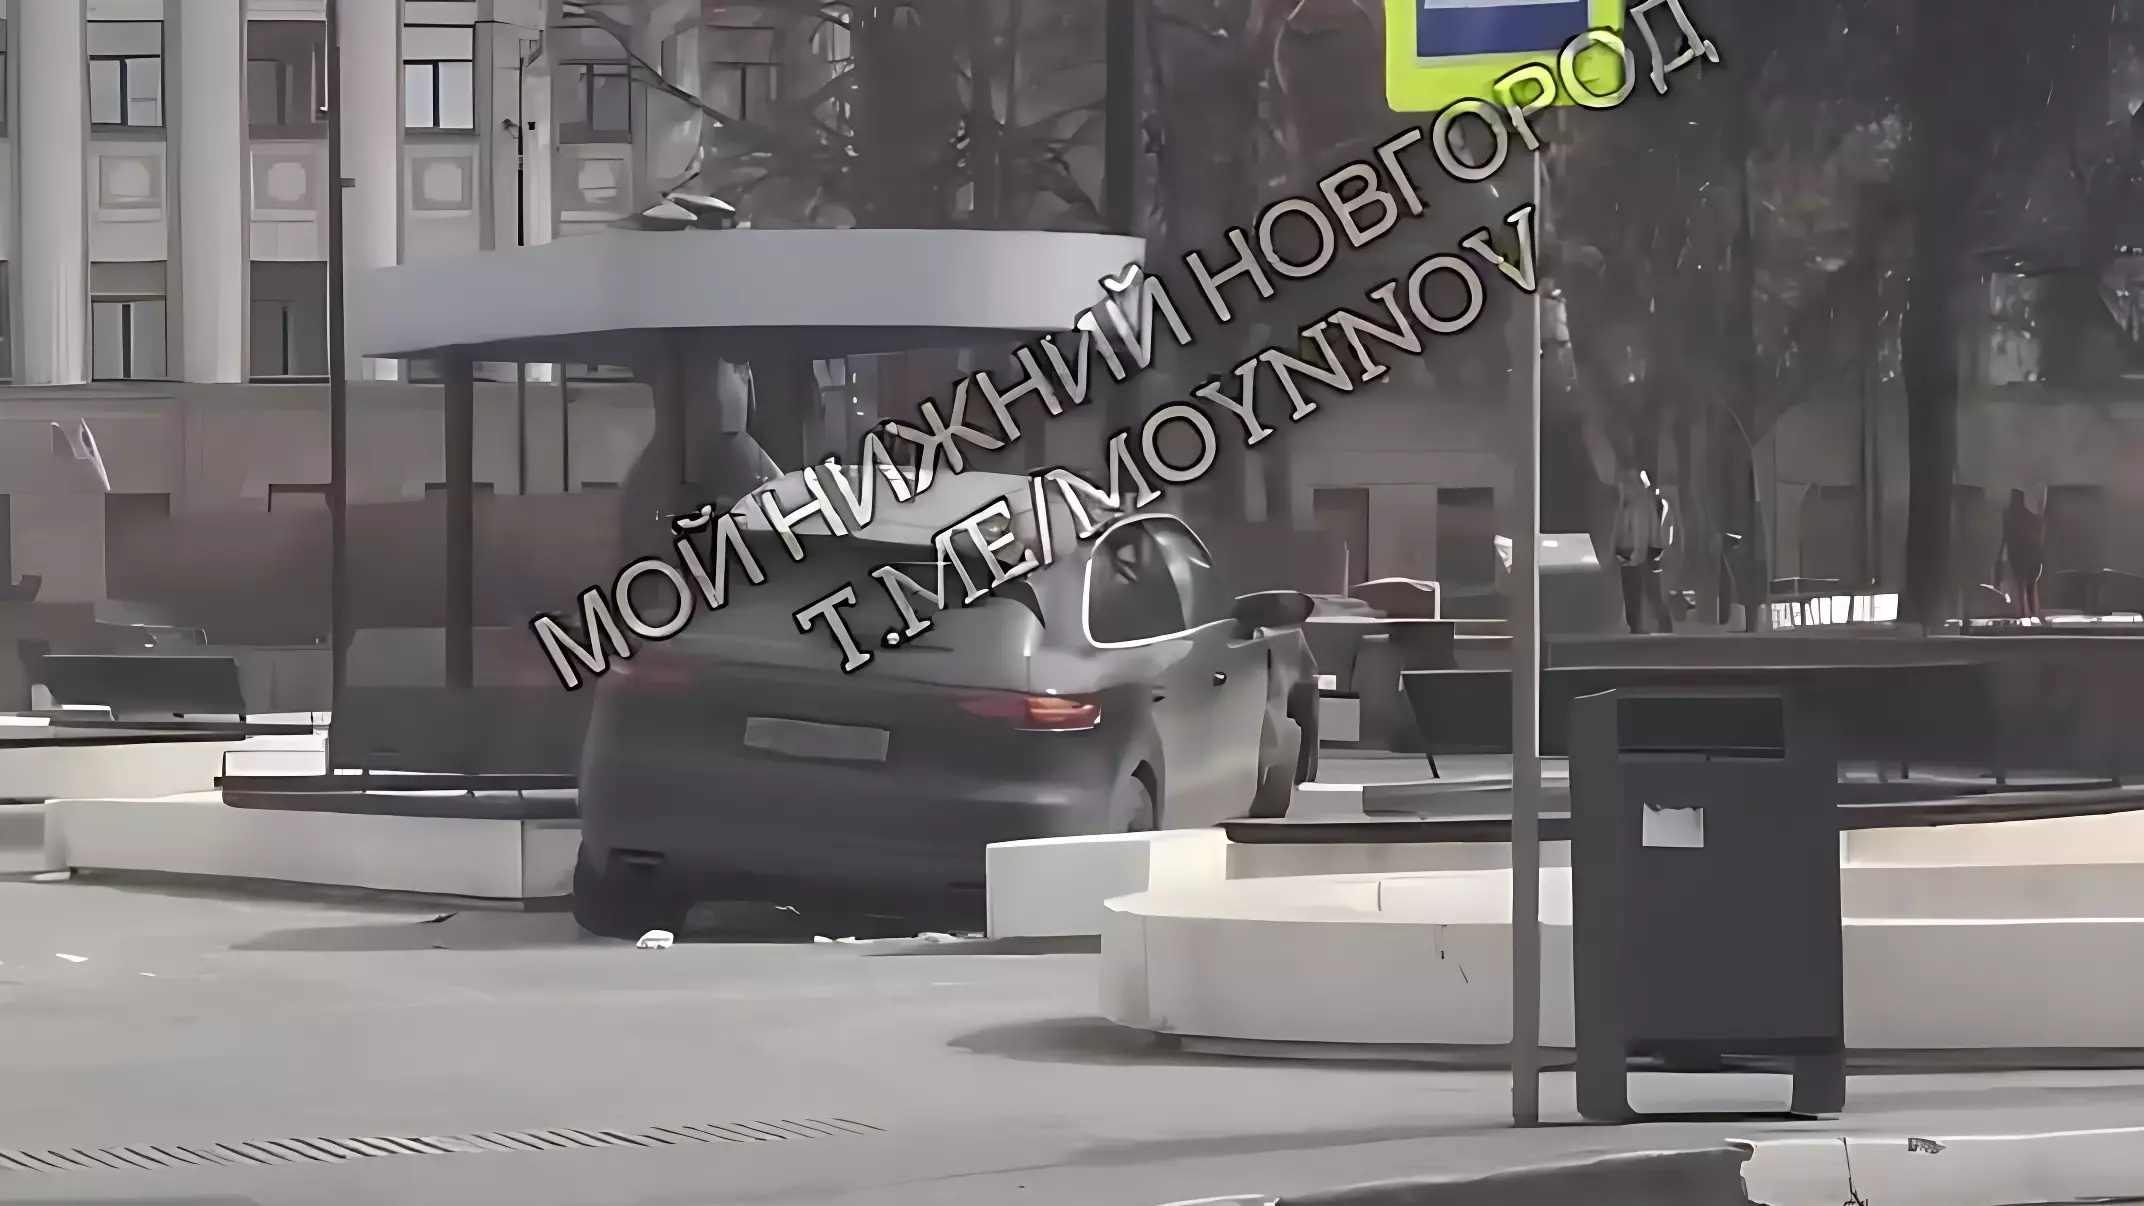 Porsche влетел в остановку в центре Нижнего Новгорода